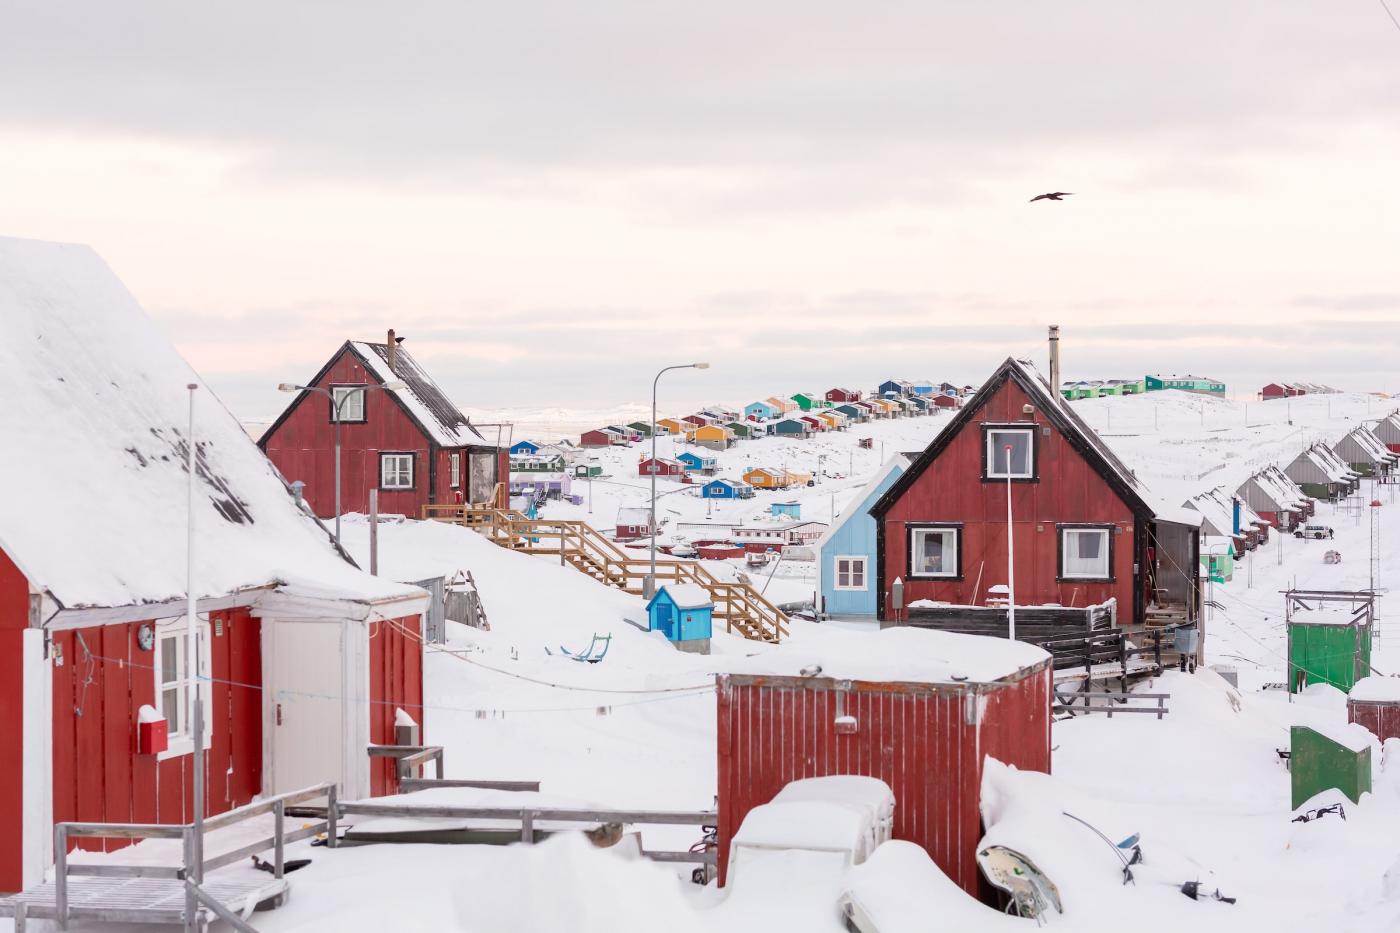 House Row in Aasiaat. Photo - Filip Gielda, Visit Greenland